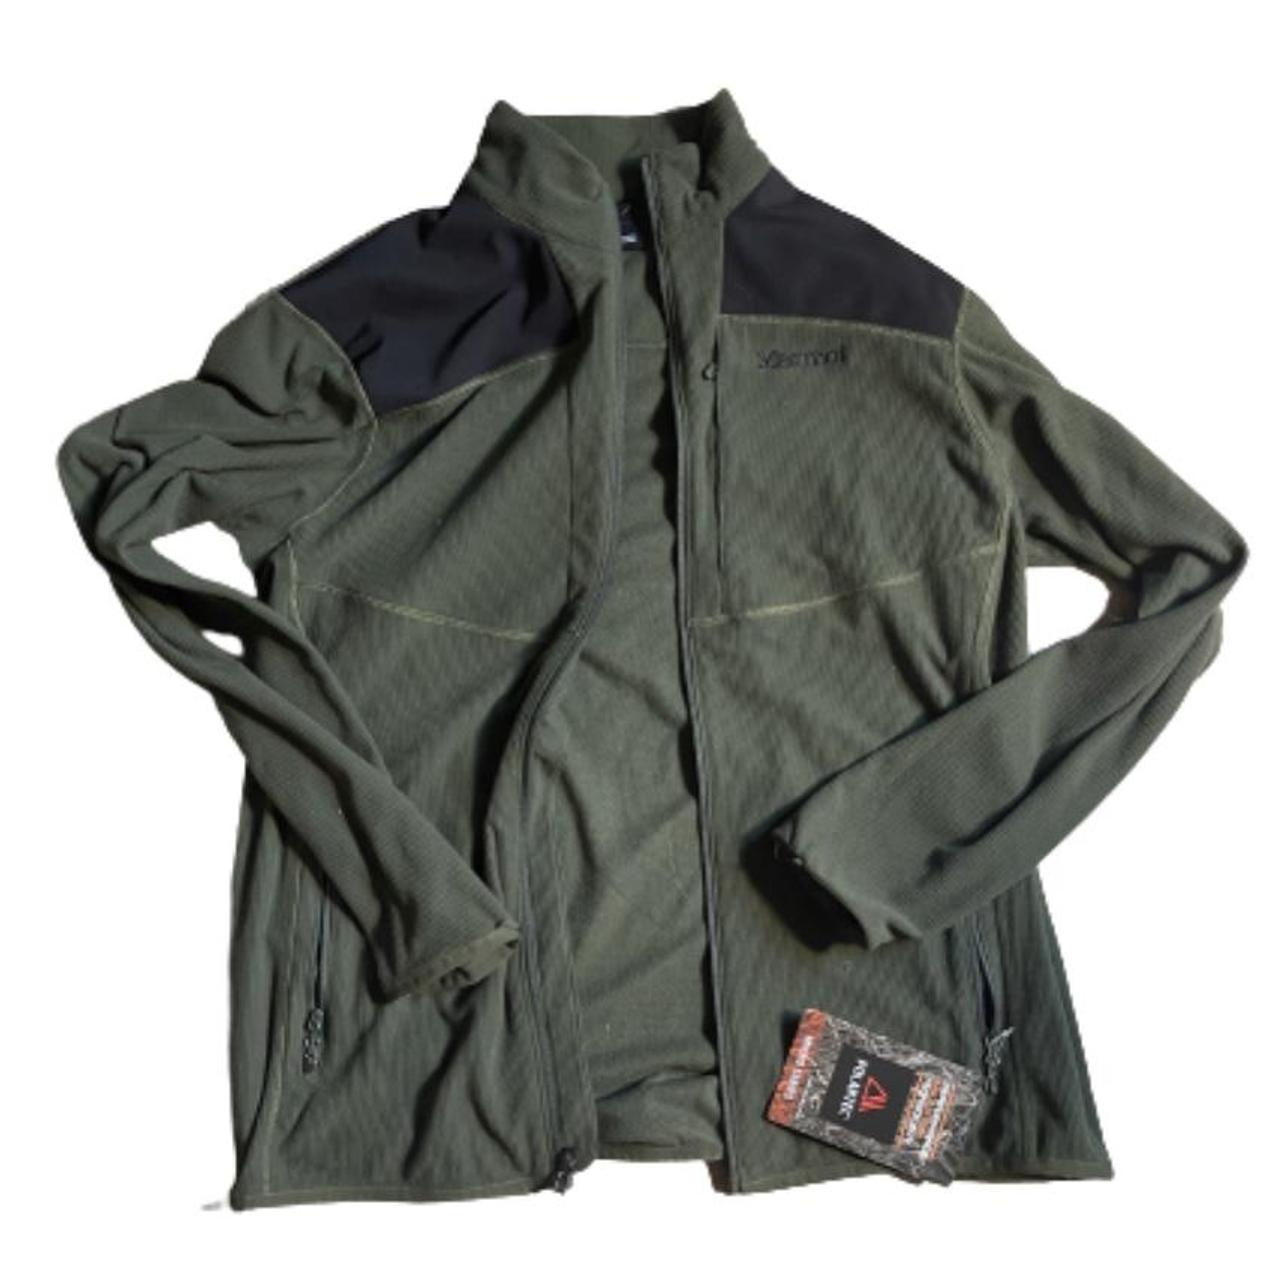 Marmot Men's Reactor Polartec Jacket (Nori) Fleece Jacket